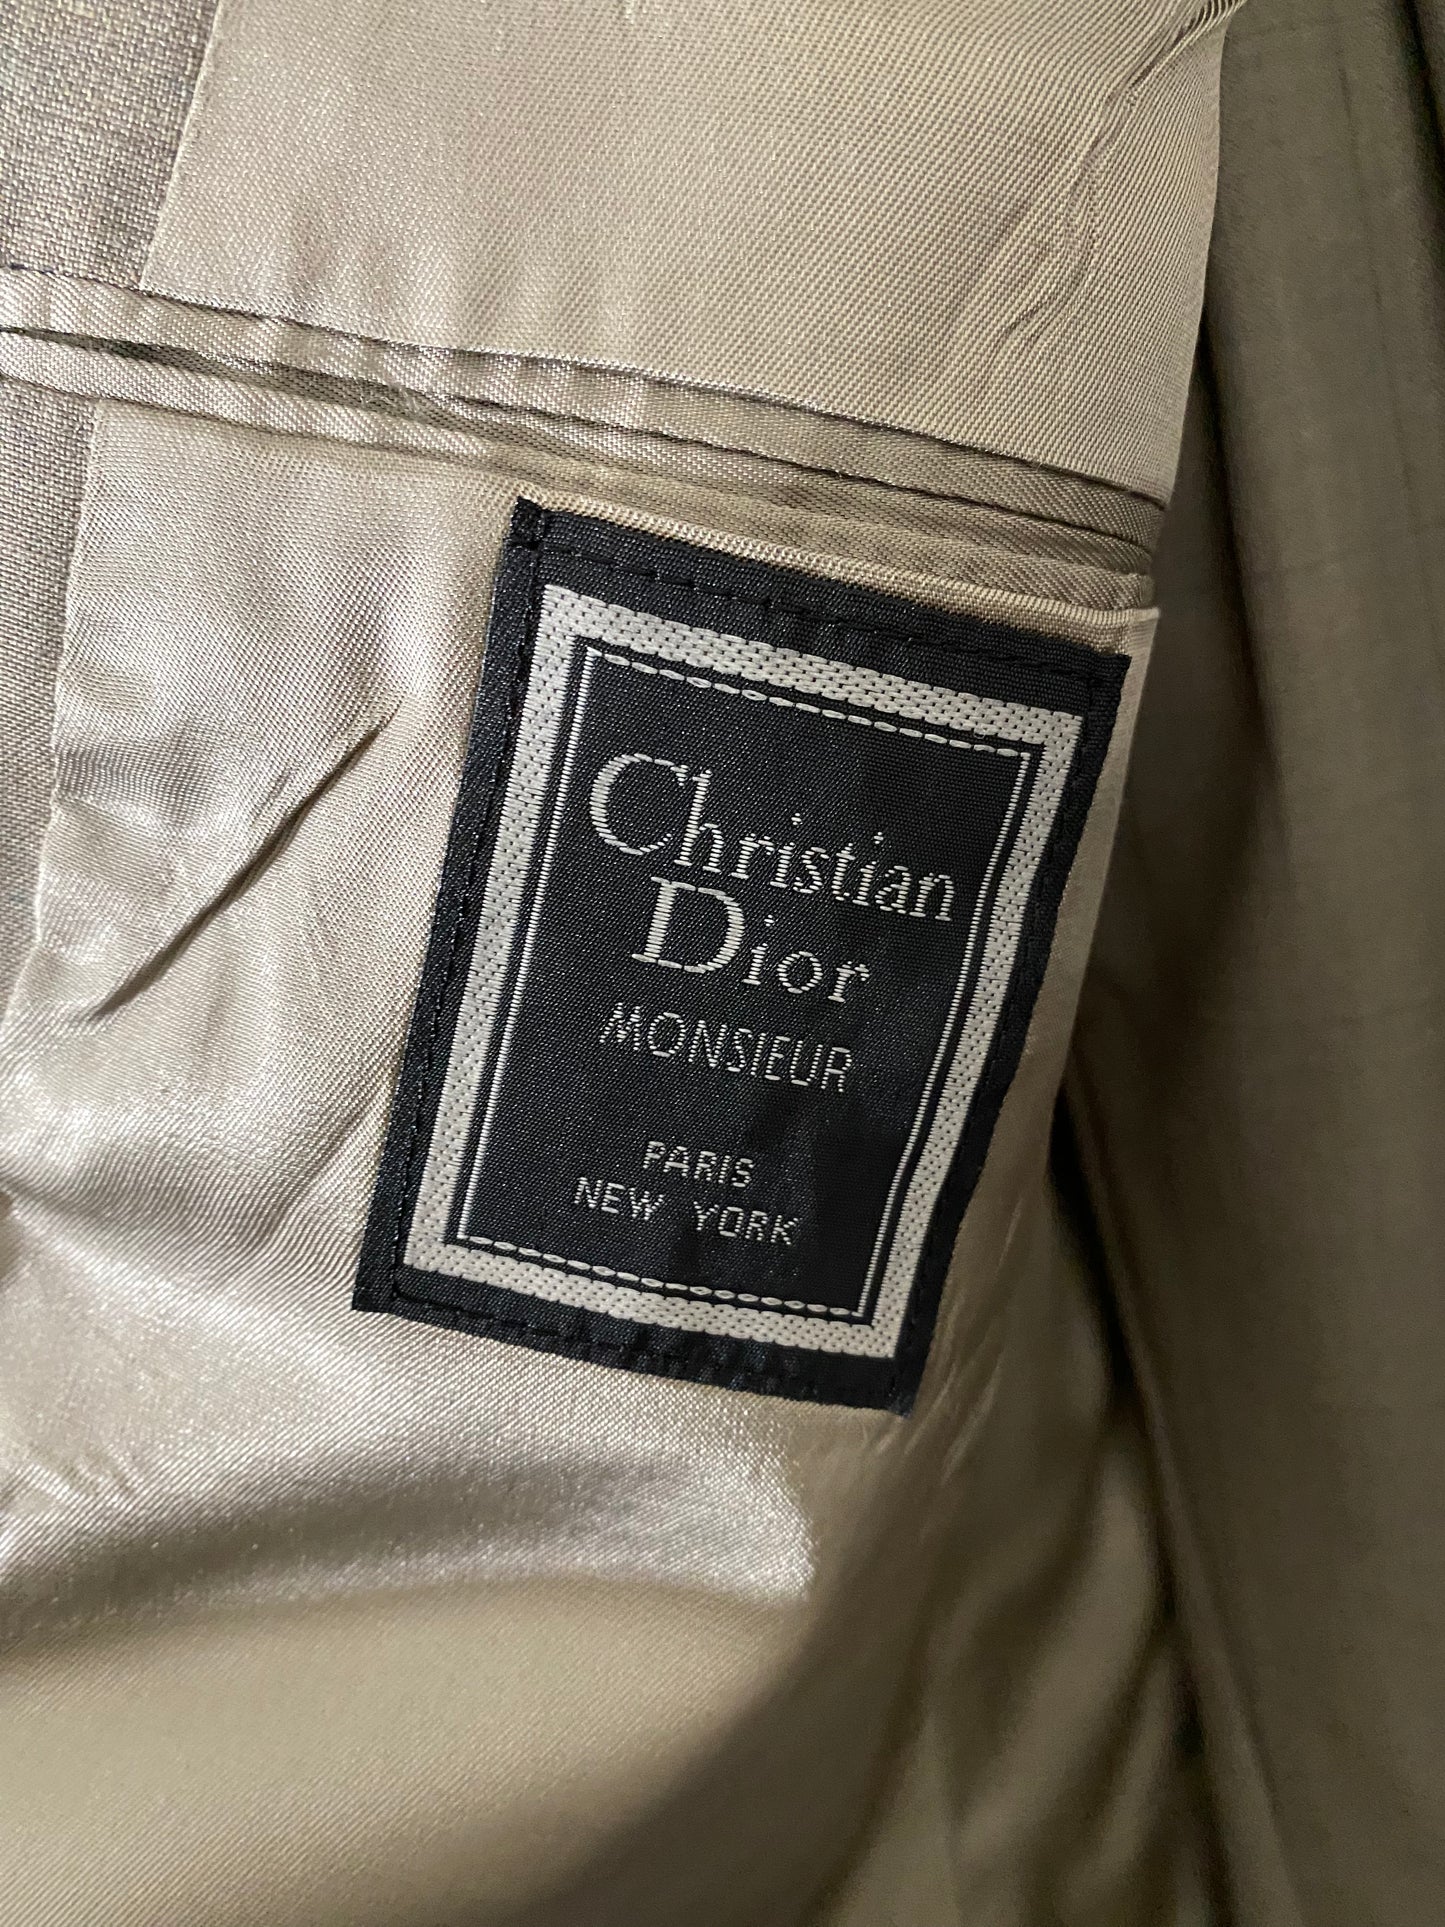 Christian Dior Men’s Suit